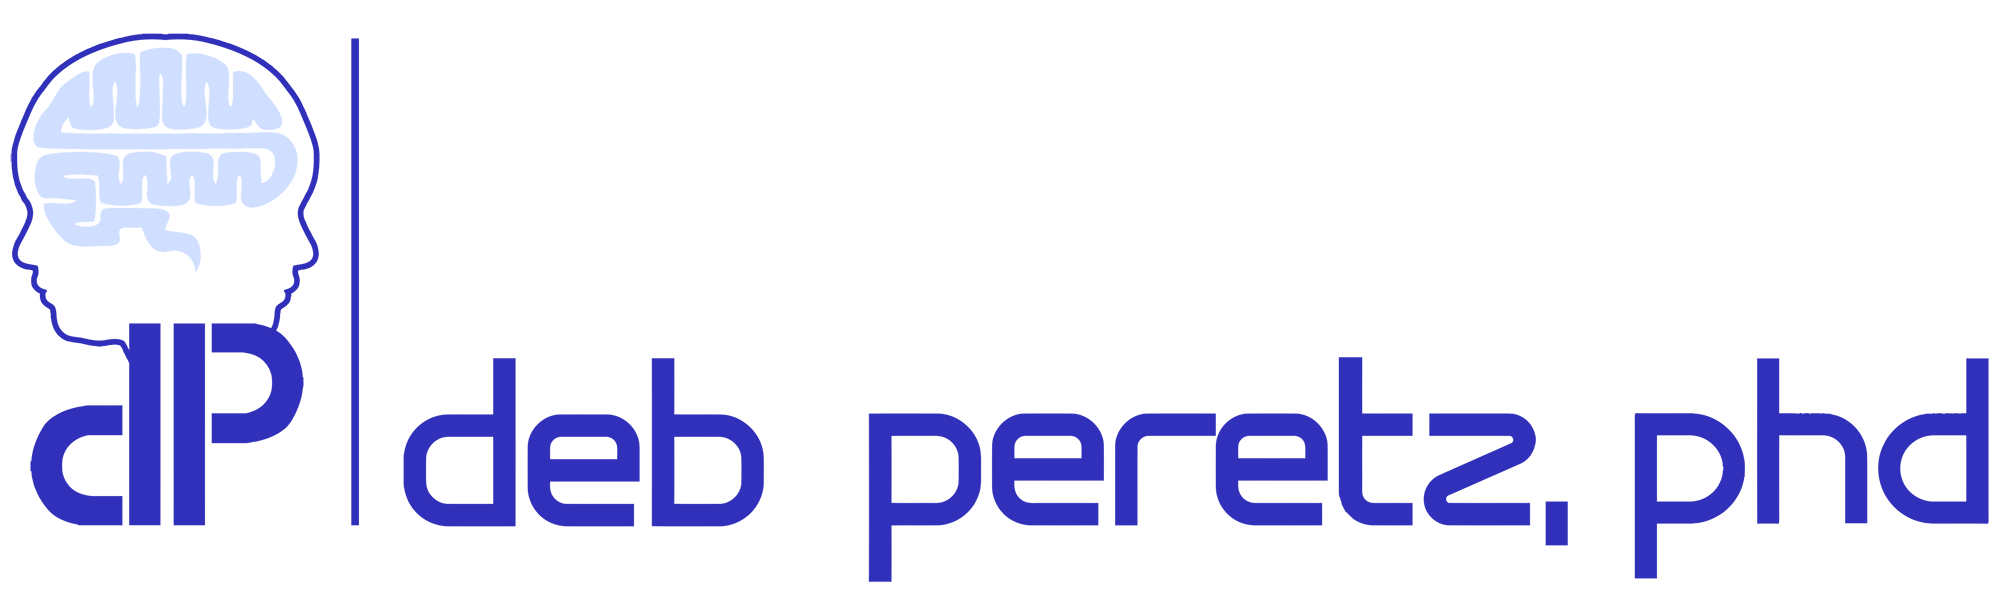 Deb Peretz, PhD logo